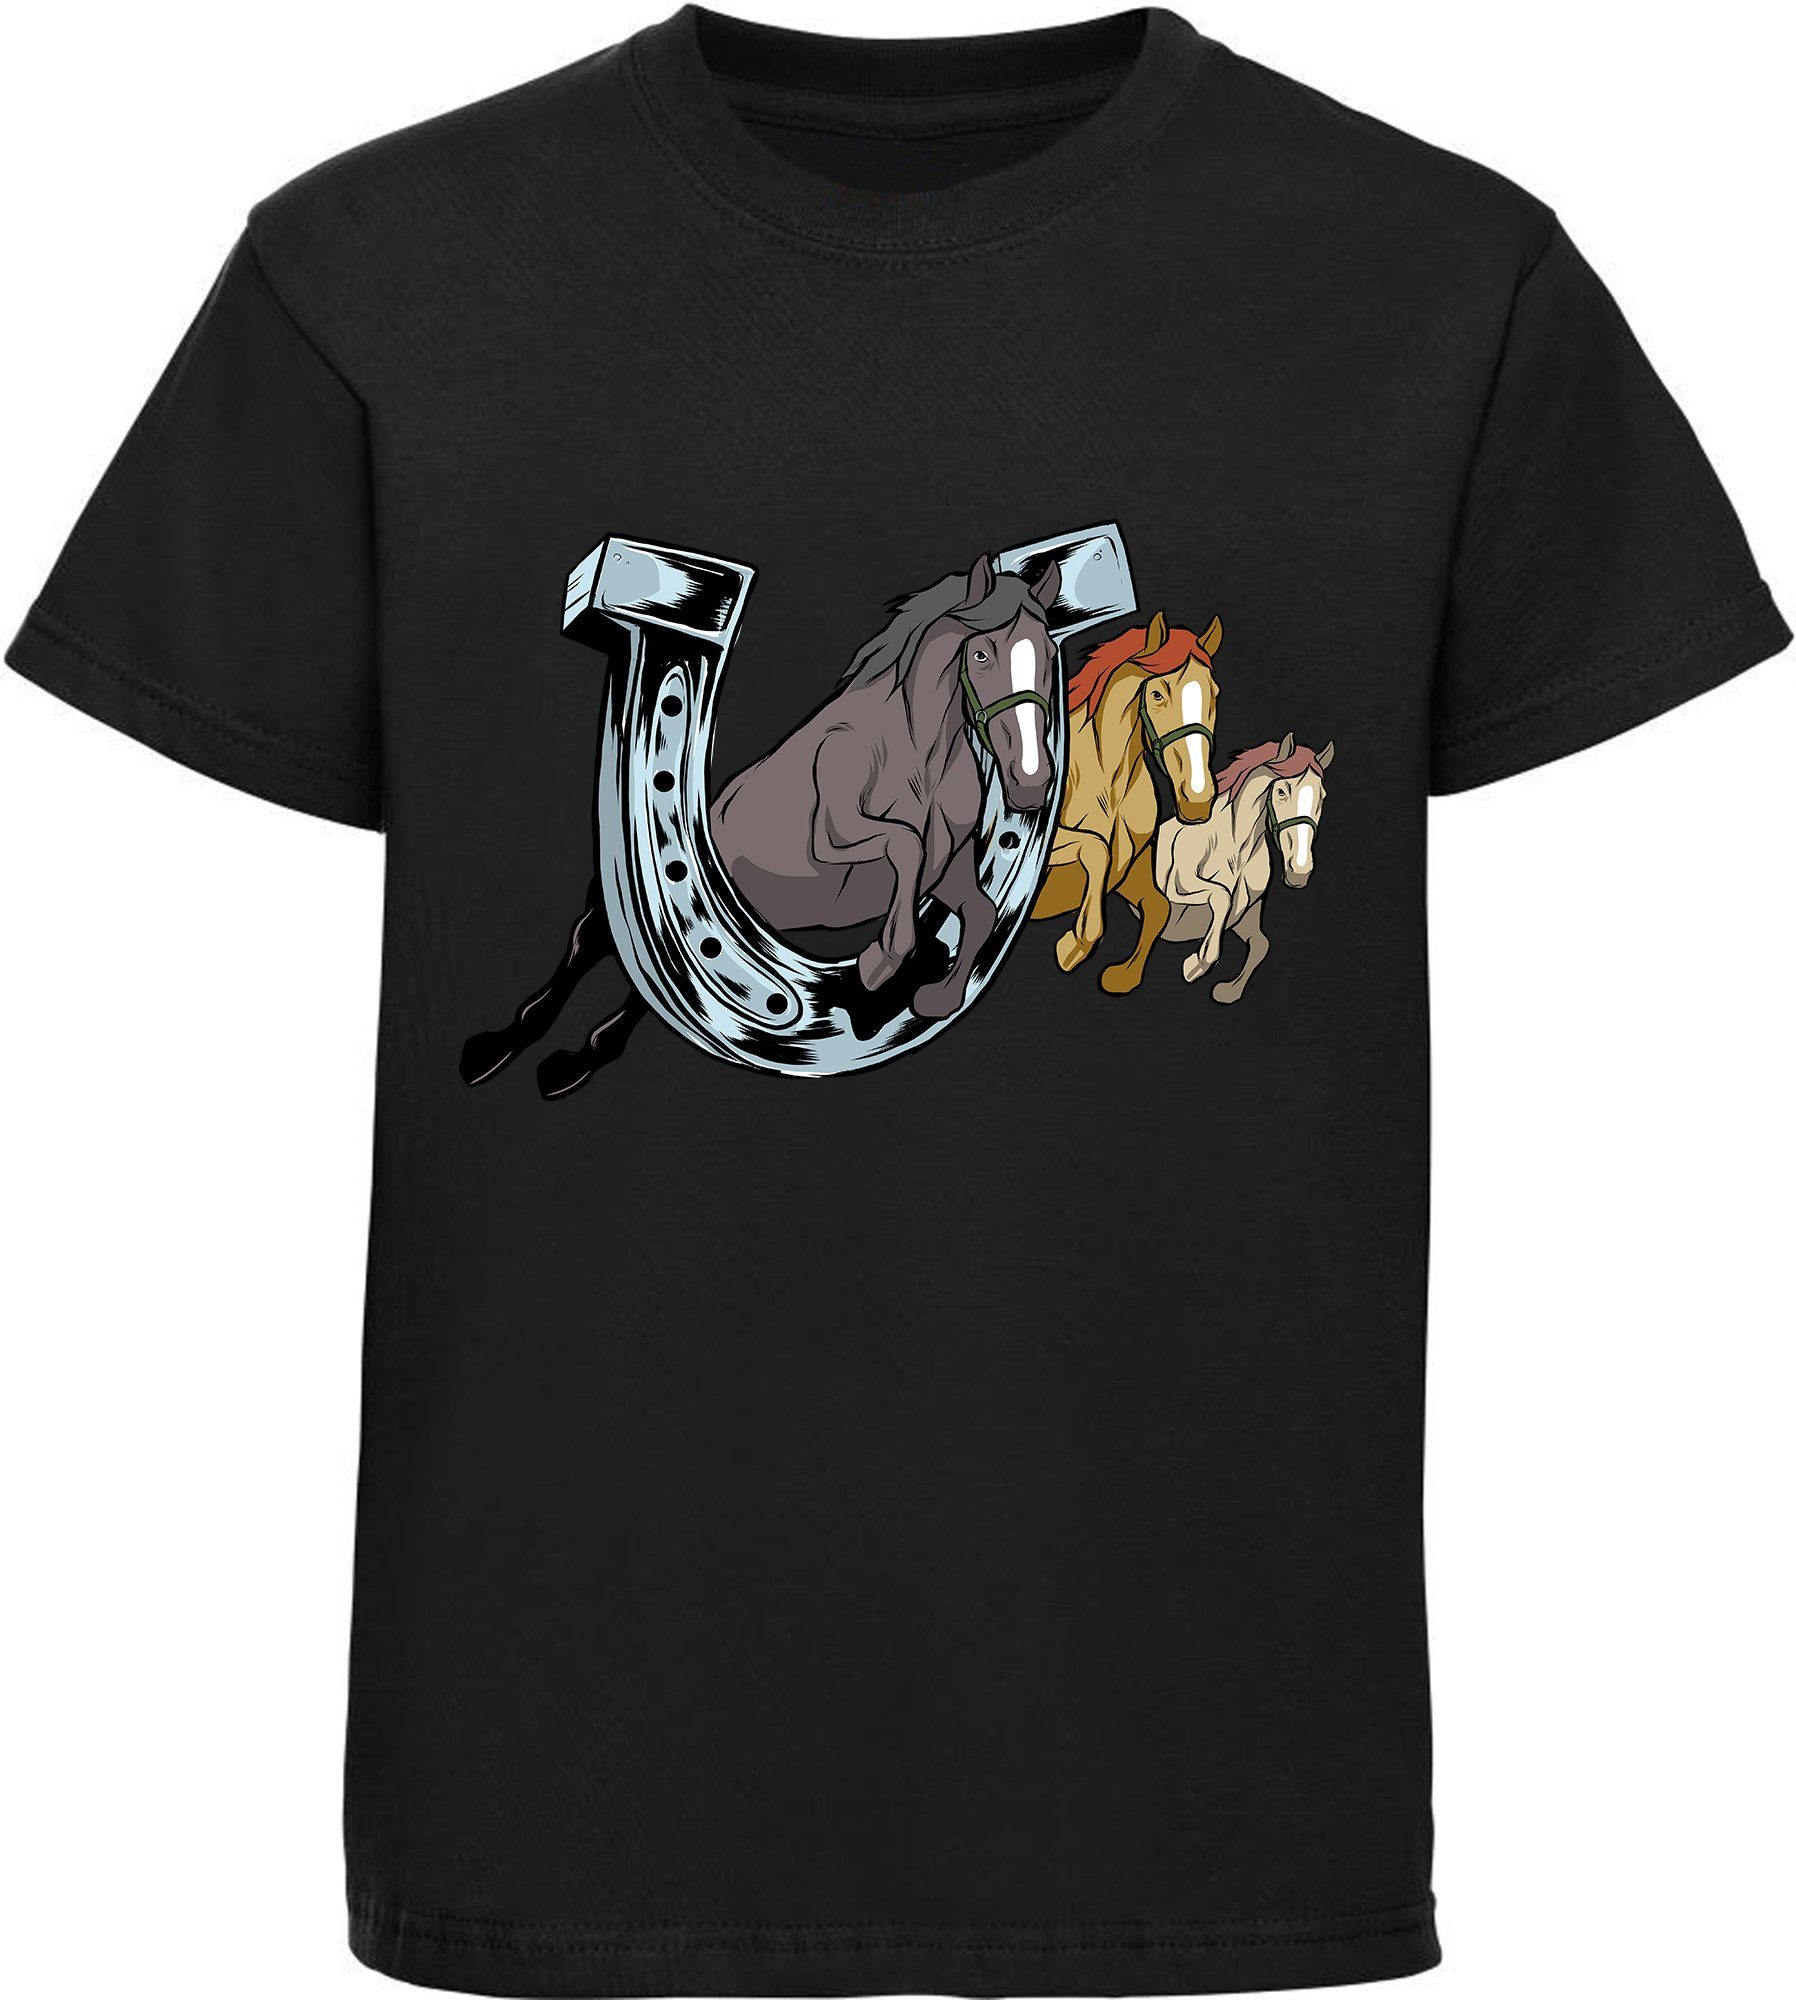 MyDesign24 Print-Shirt bedrucktes Mädchen T-Shirt drei springende Pferde durch ein Hufeisen Baumwollshirt mit Aufdruck, i145 schwarz